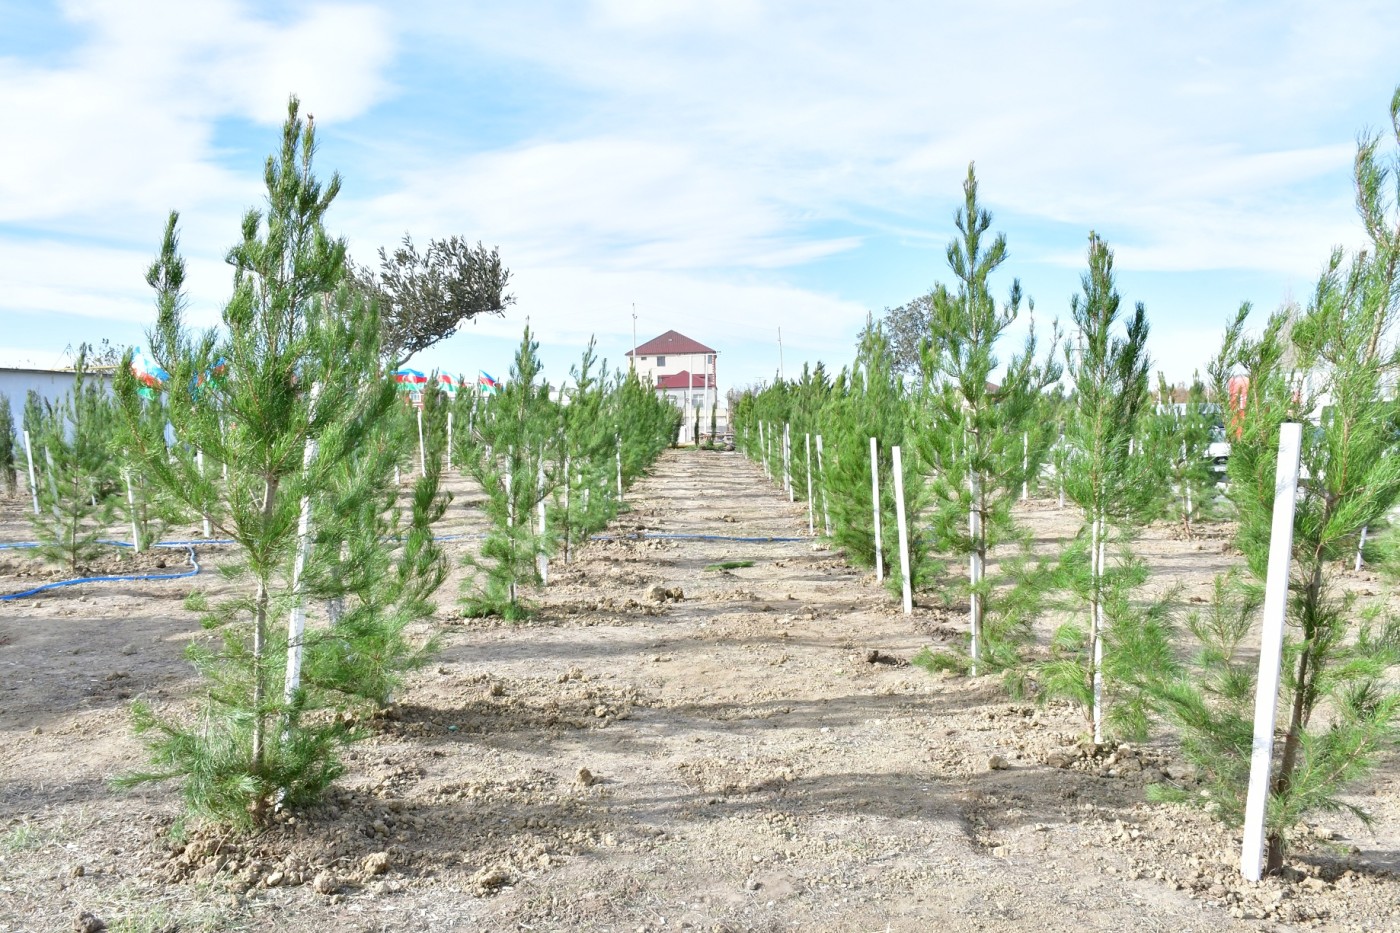 Abşeronda “Heydər Əliyev İli” çərçivəsində genişmiqyaslı ağacəkmə aksiyası keçirildi - FOTOLAR